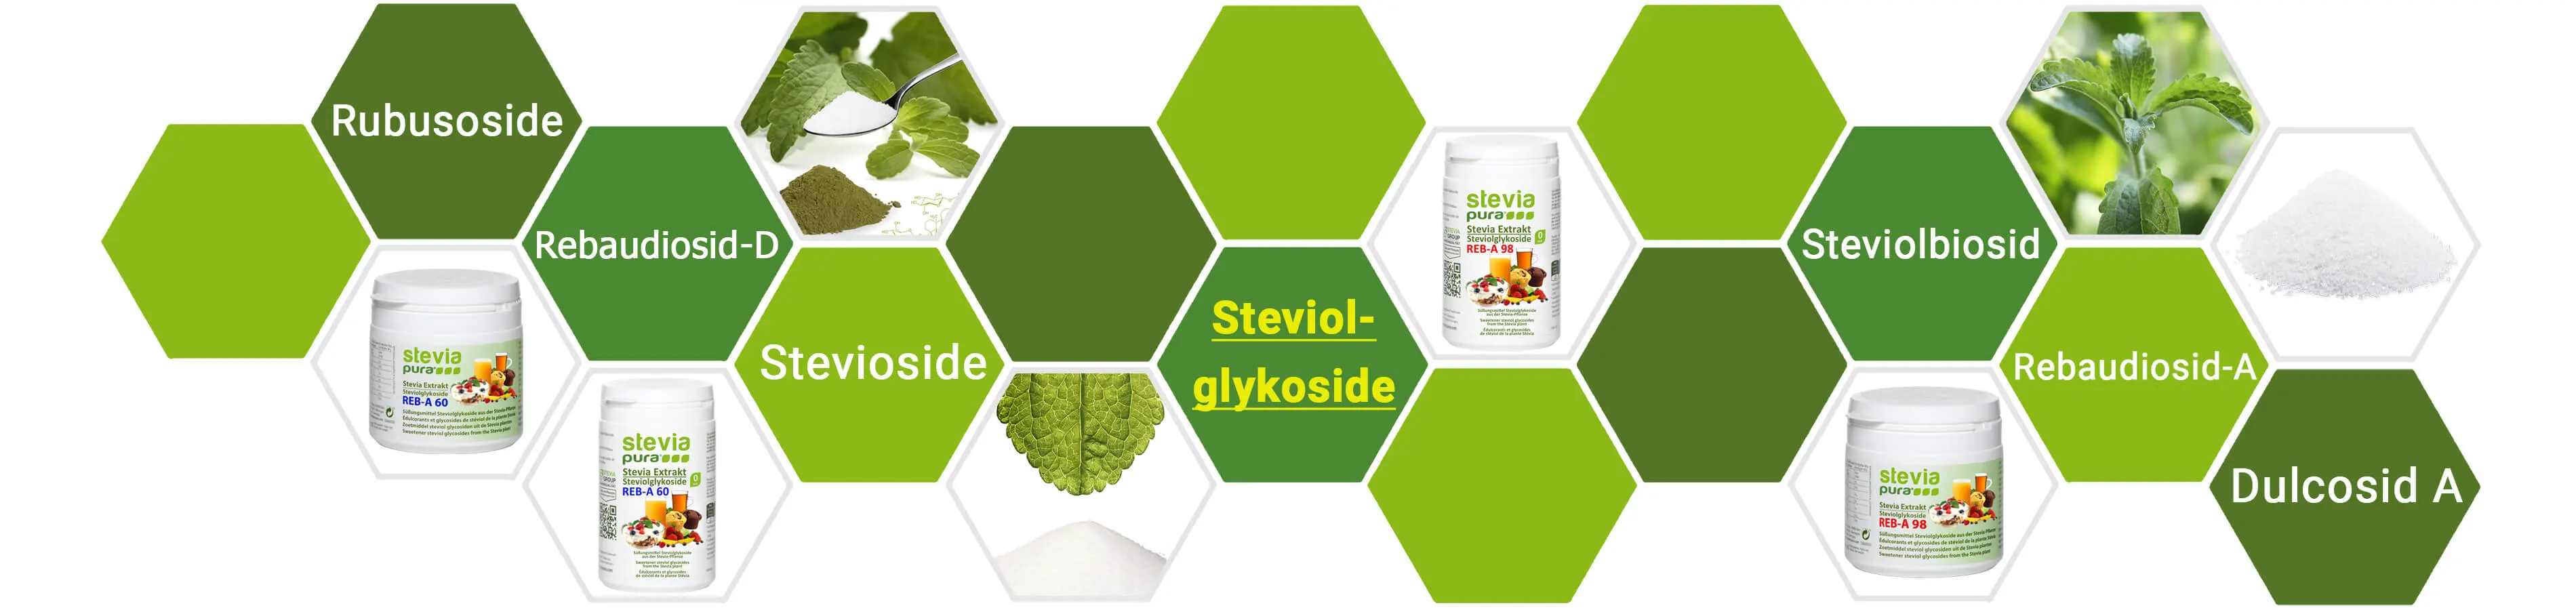 Cosa sono i Glicosidi Steviolici? | Il sostituto dello...